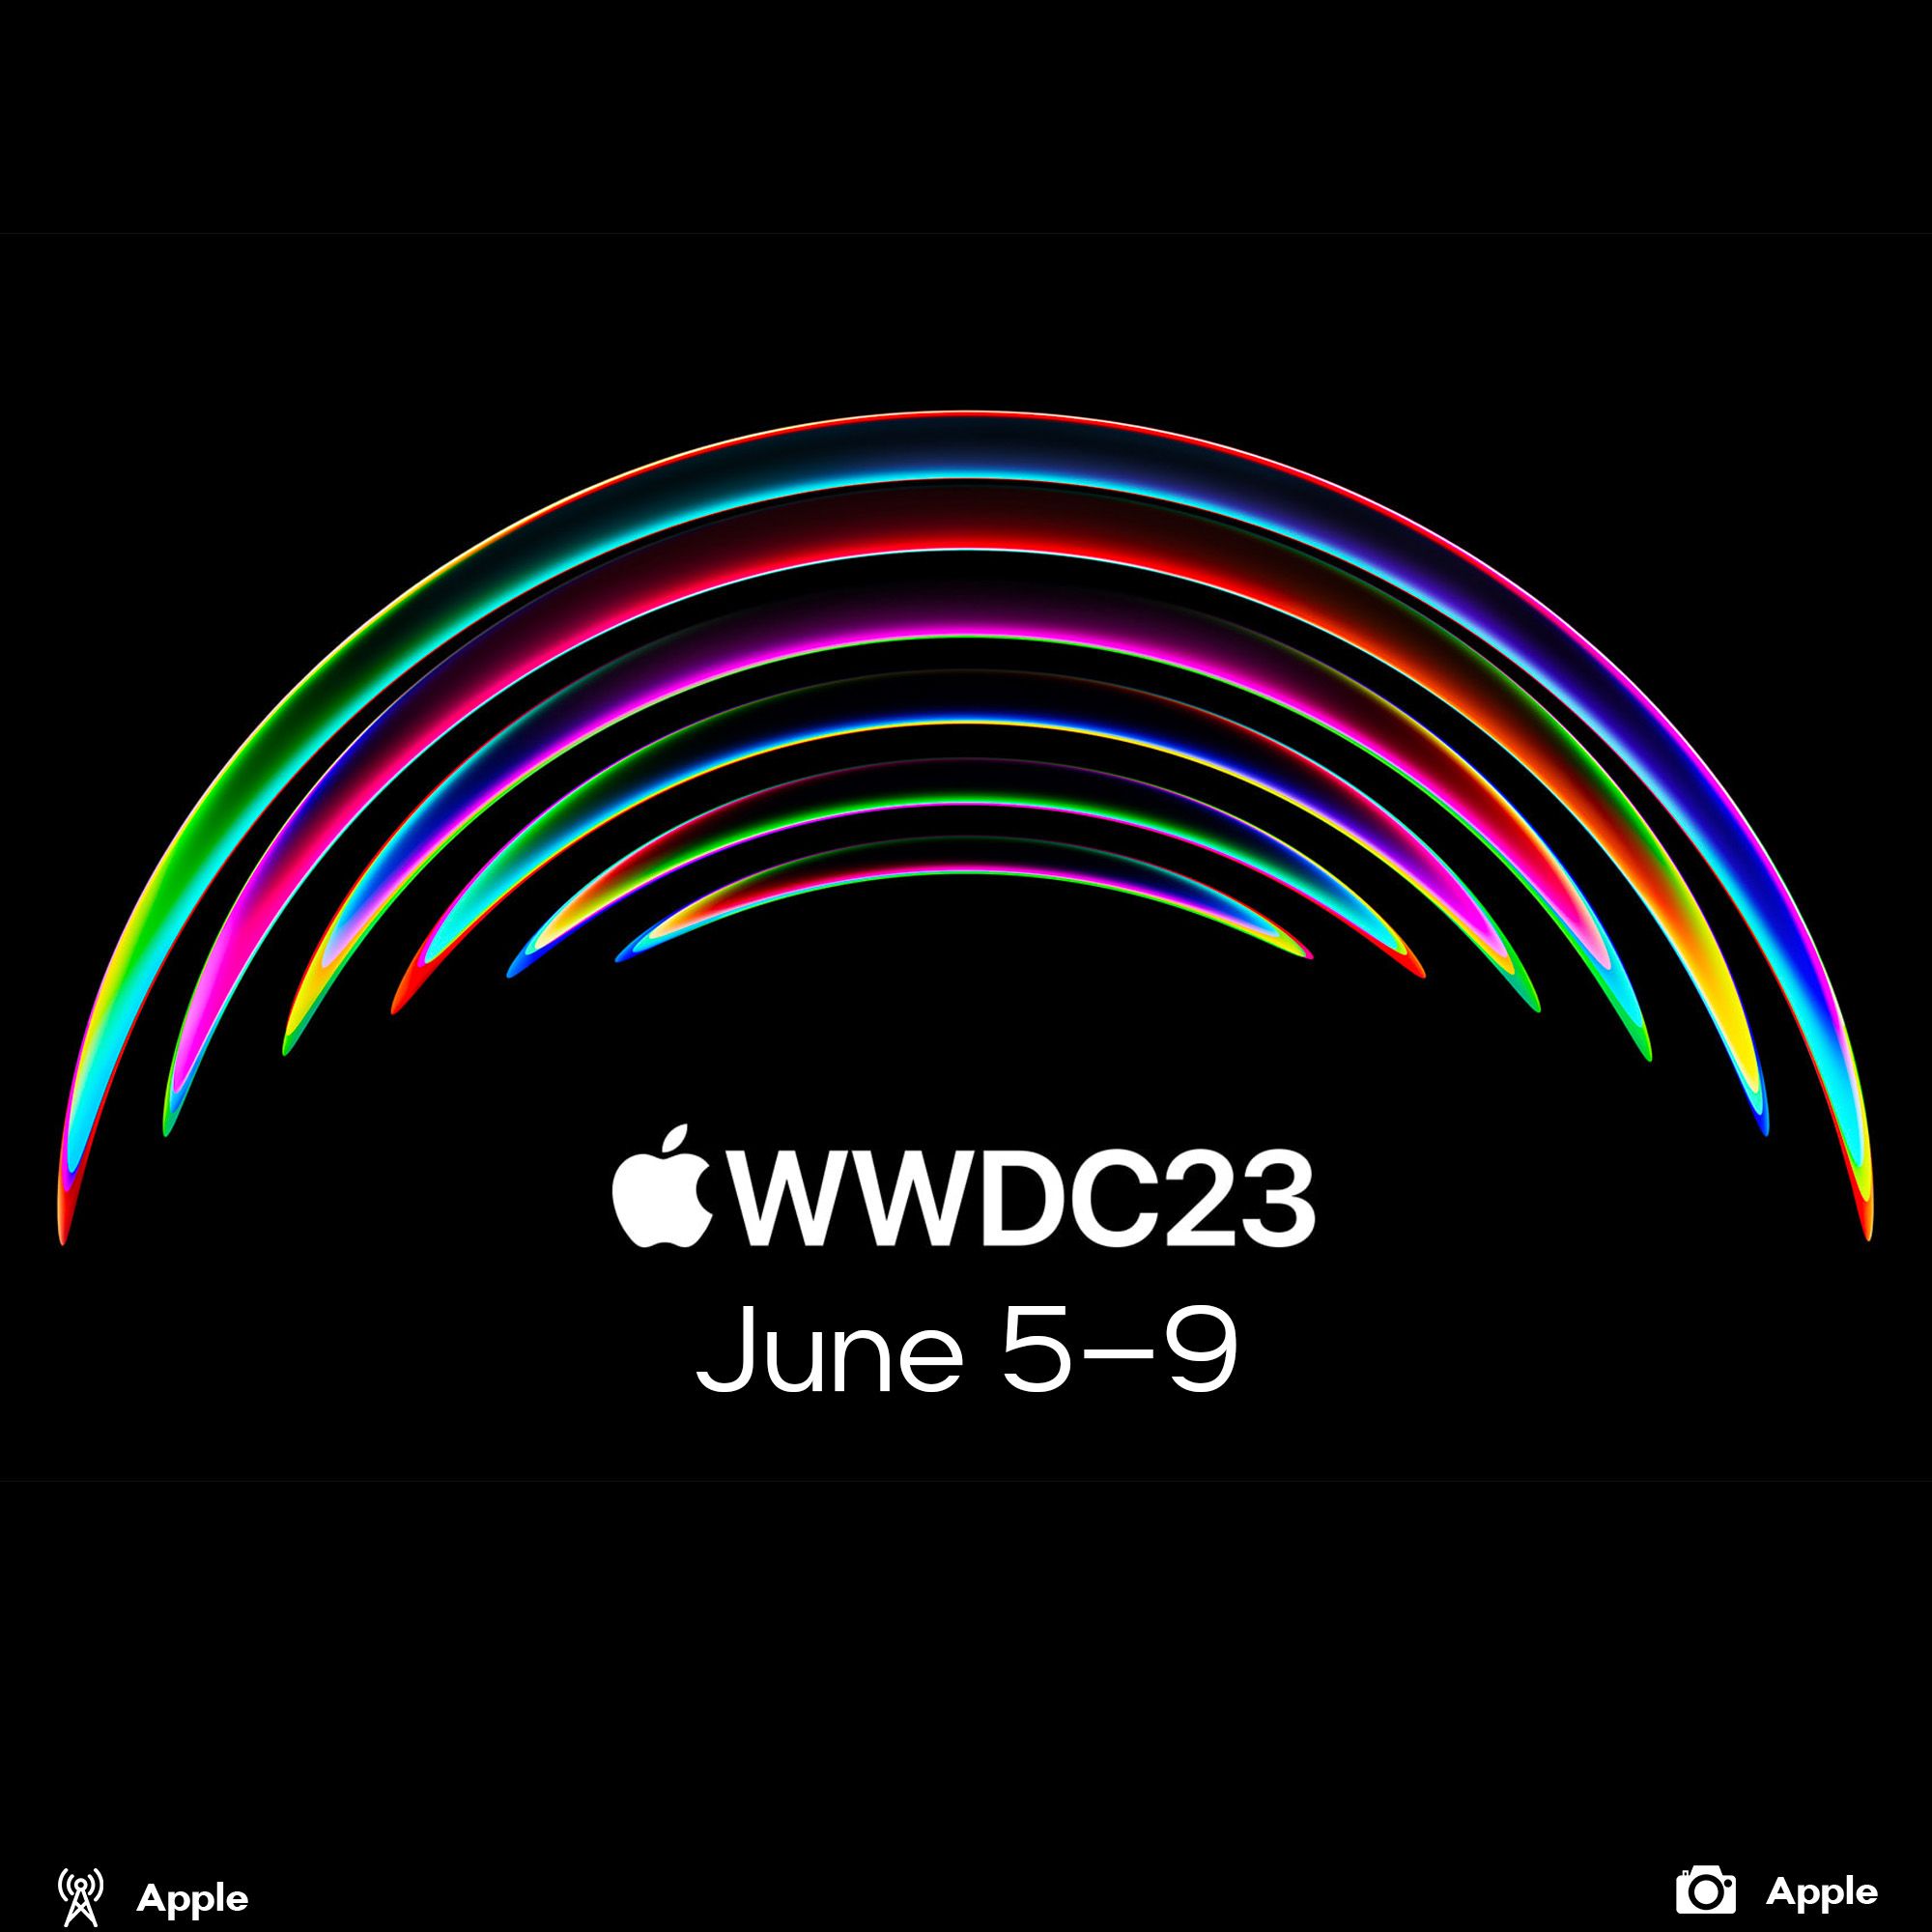 WWDC23 announced